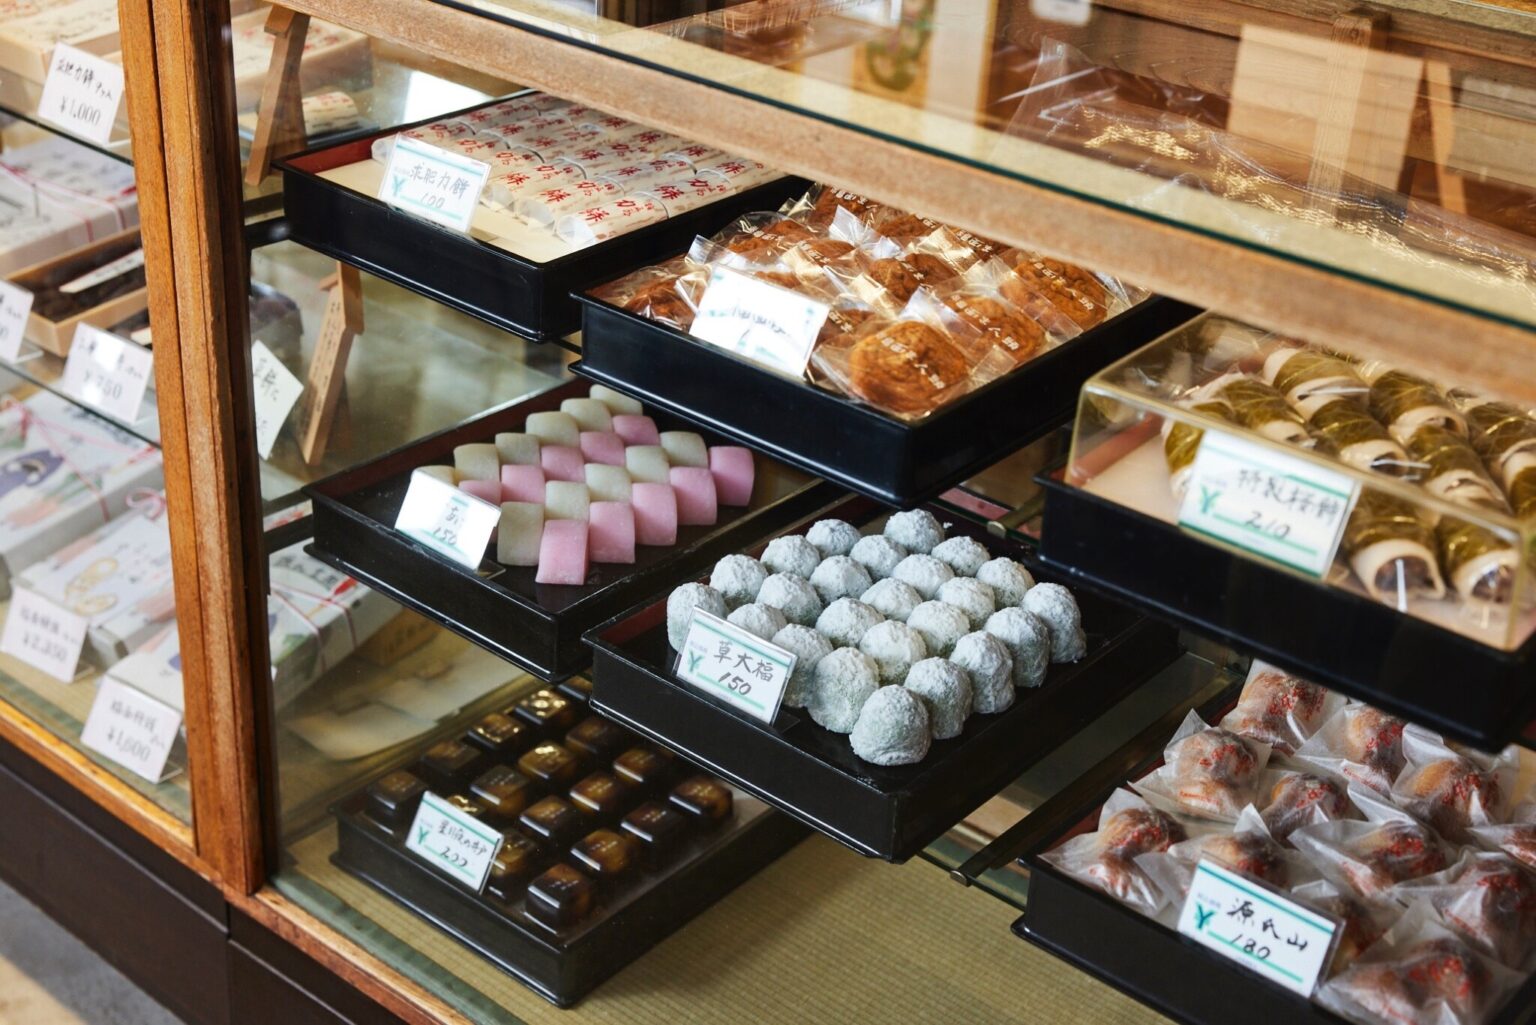 店内にはところ狭しと置かれたせんべいなどのお菓子も販売されている。ケースの中には、求肥力餅、源氏山などをはじめ、鎌倉にちなんだオリジナル商品が並んでいる。